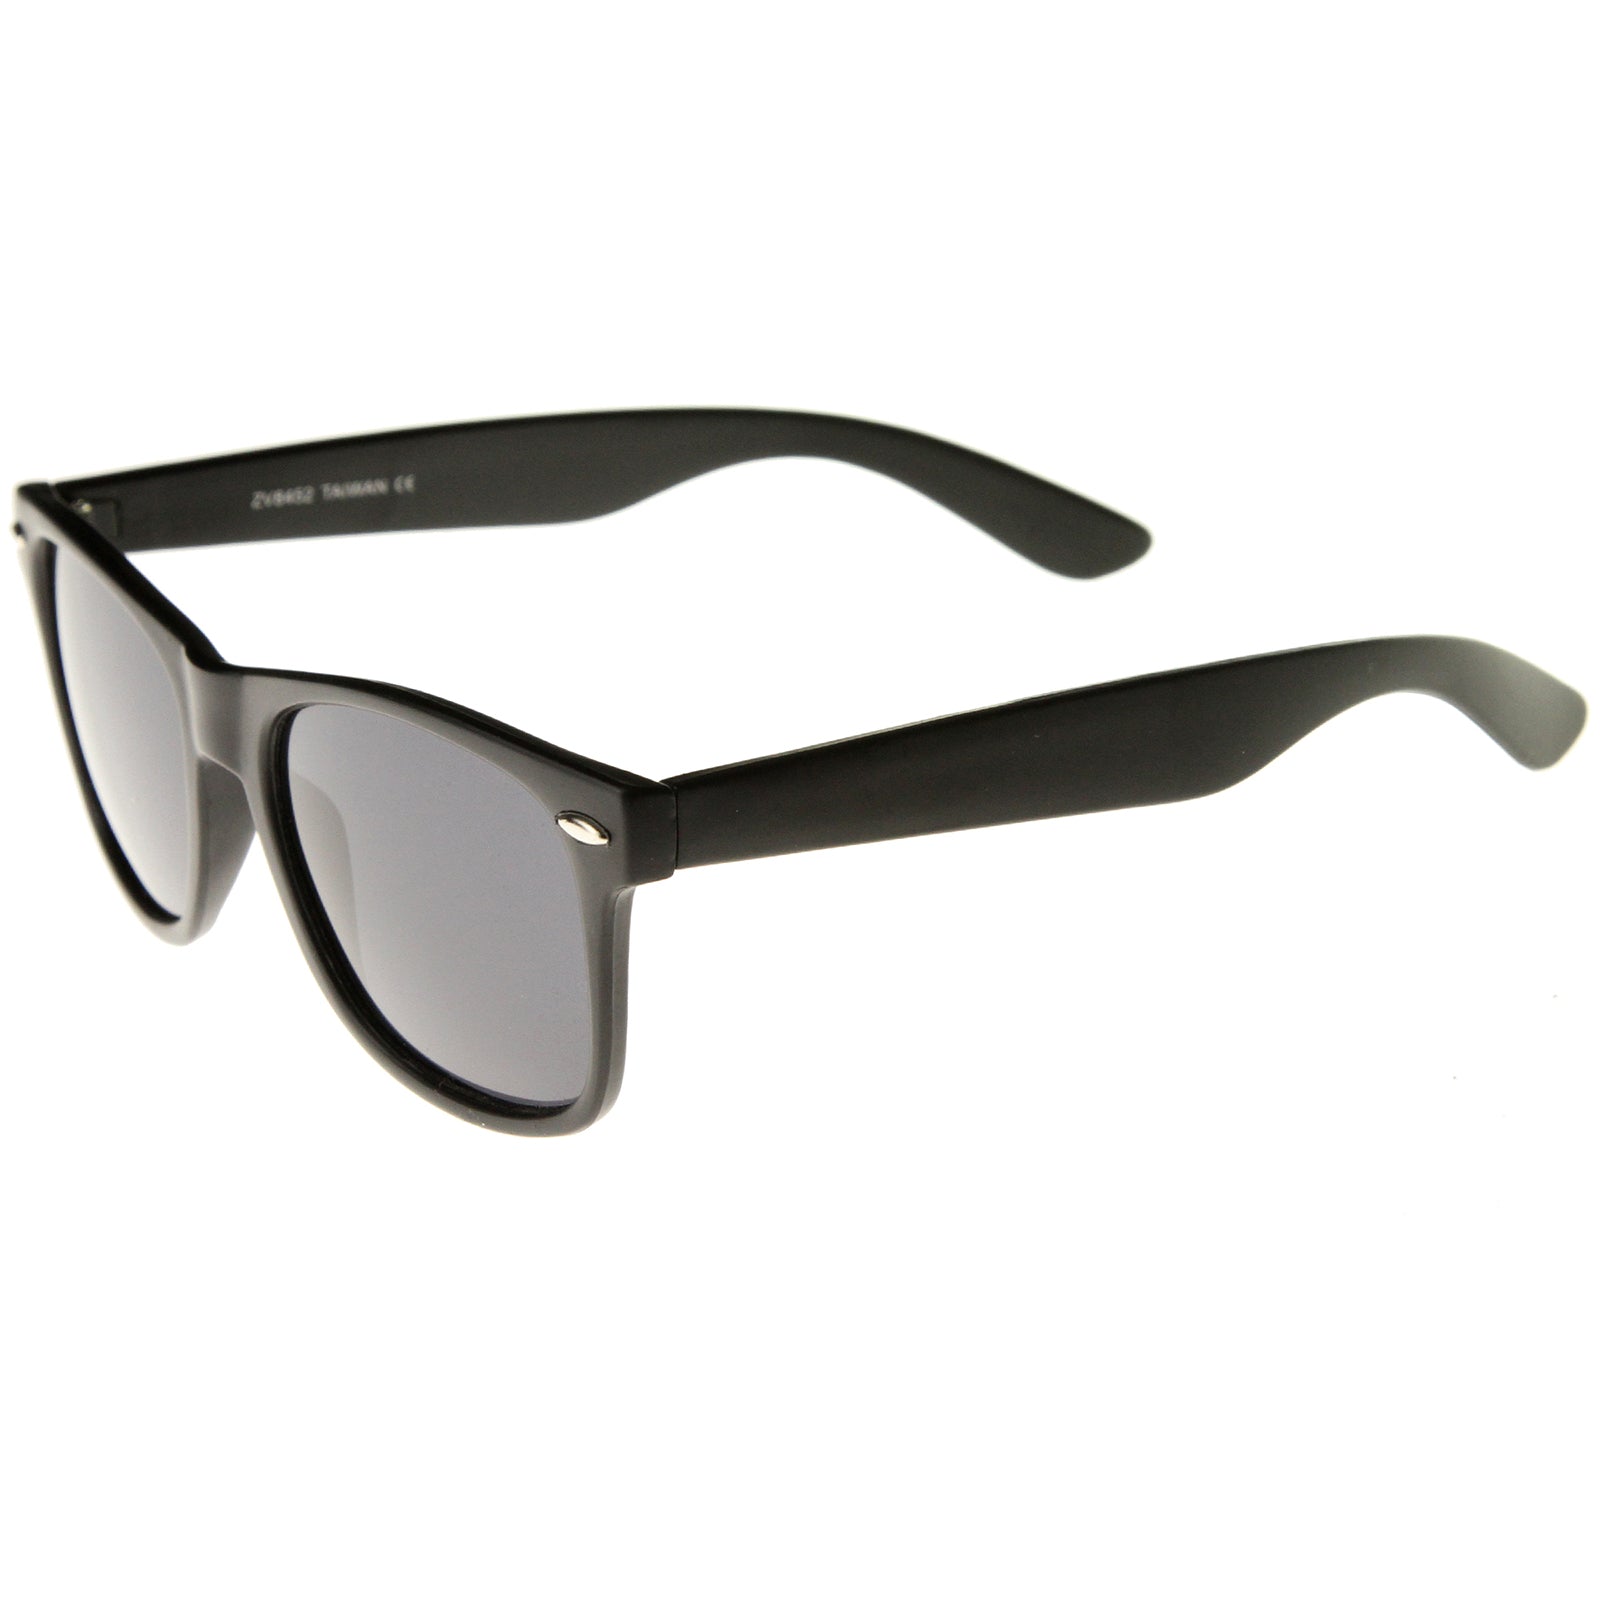 Buy Custom White Frame Plastic Sunglasses - Swagify